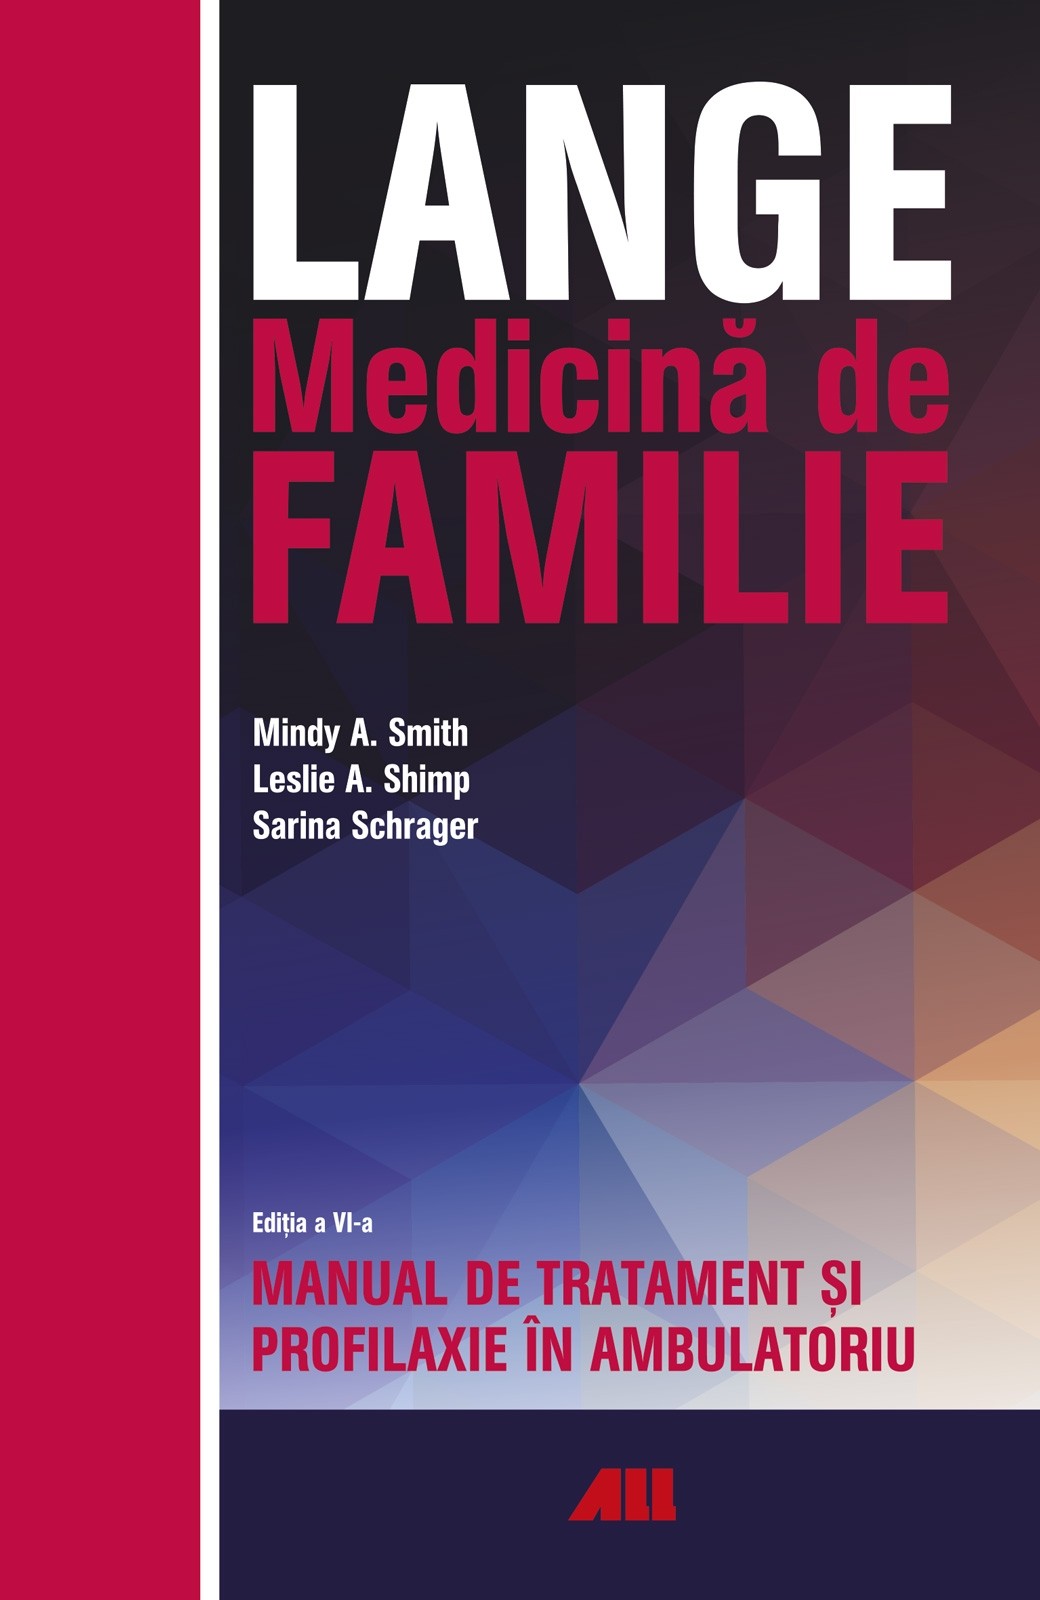 LANGE. Medicina de familie | Leslie A. Shimp, Mindy A. Smith, Sarina Schrager Pret Mic ALL imagine 2021